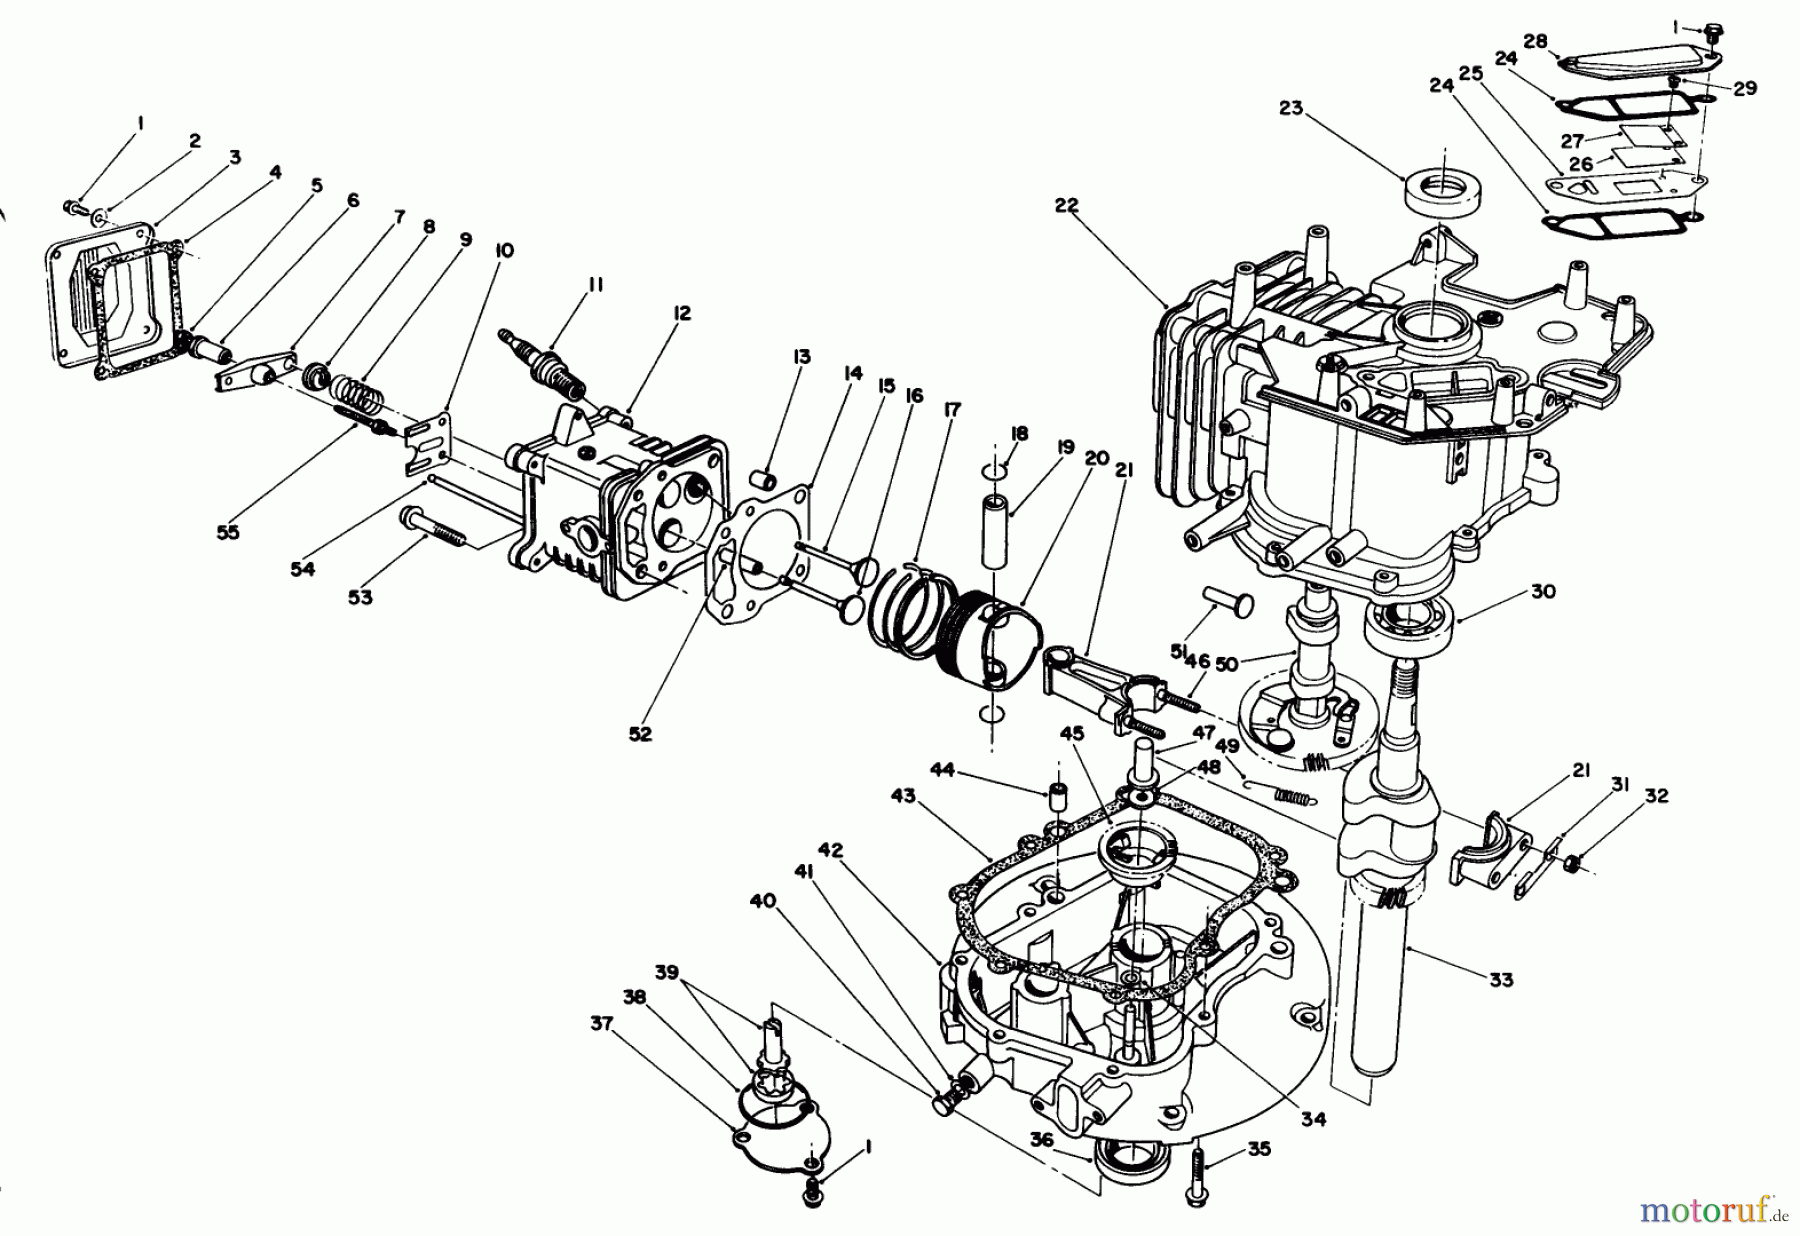  Toro Neu Mowers, Walk-Behind Seite 1 20526 - Toro Lawnmower, 1987 (7000001-7999999) ENGINE ASSEMBLY (MODEL NO. VMG6) #2